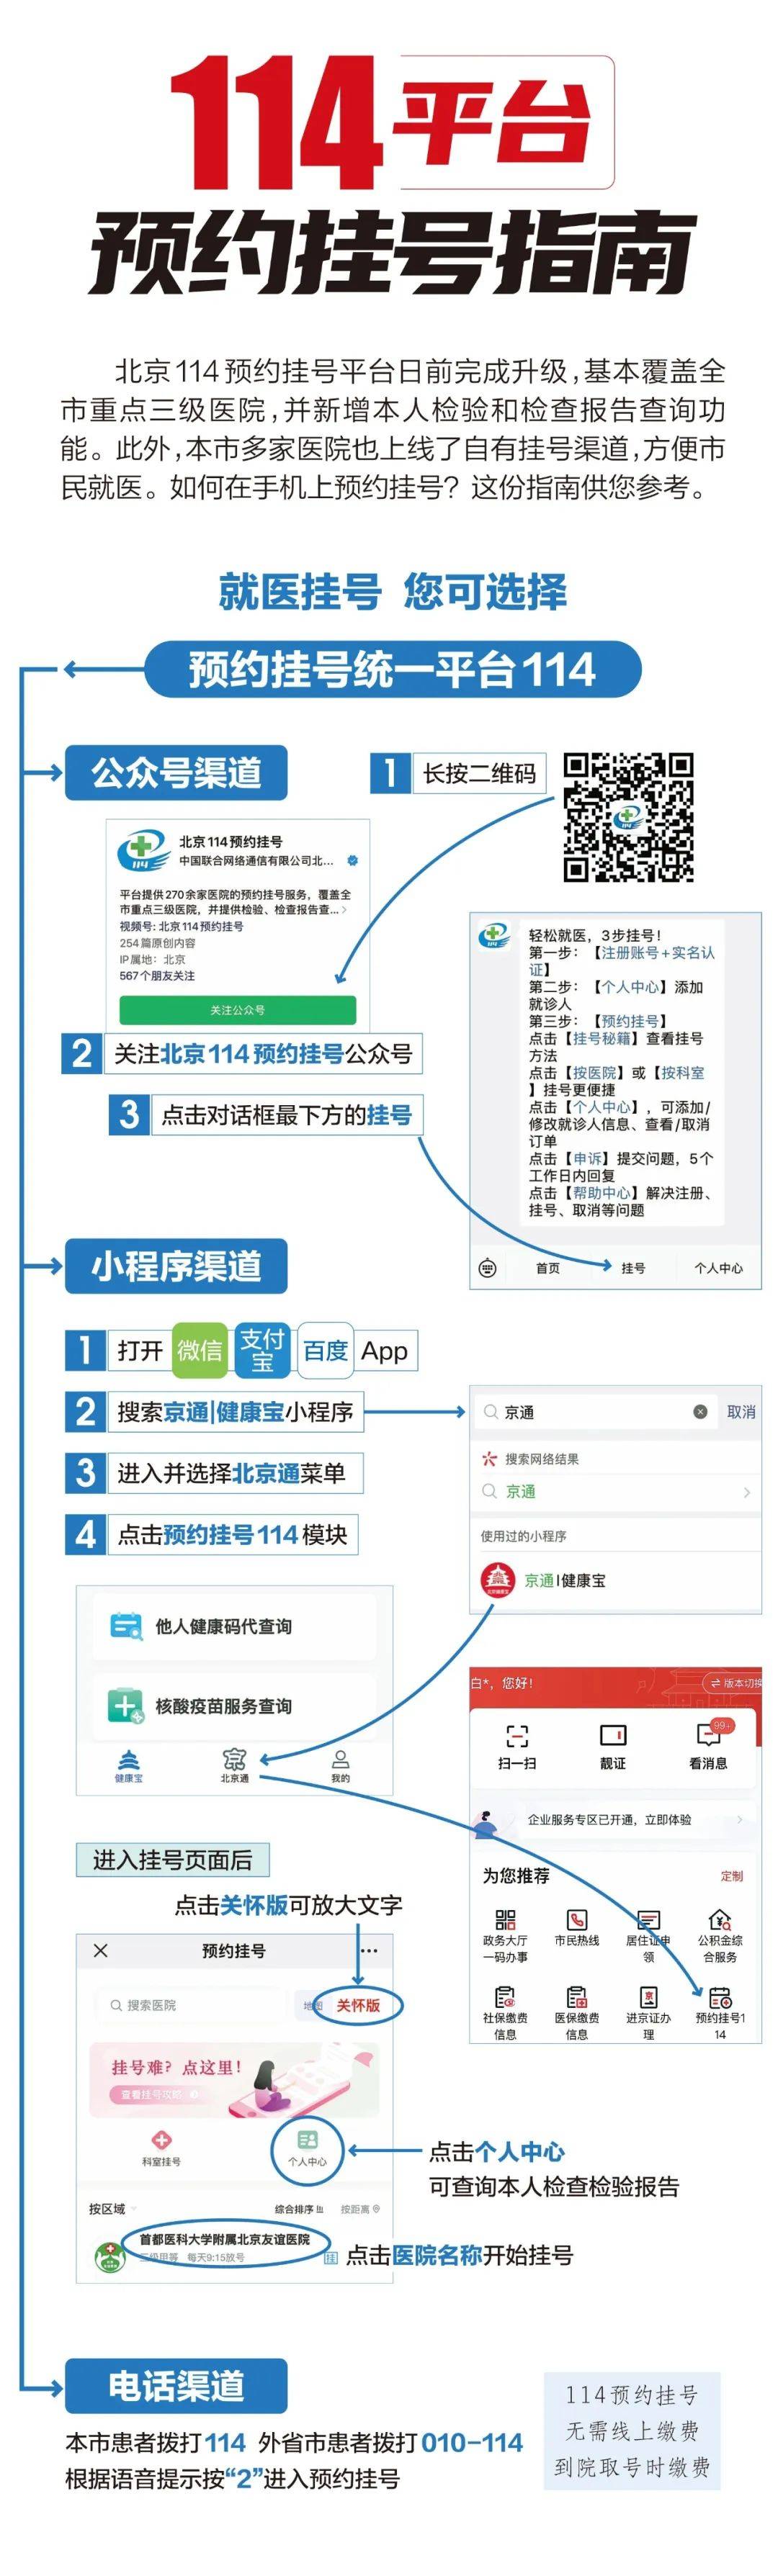 北京市海淀妇幼保健院号贩子挂号电话,欢迎咨询的简单介绍